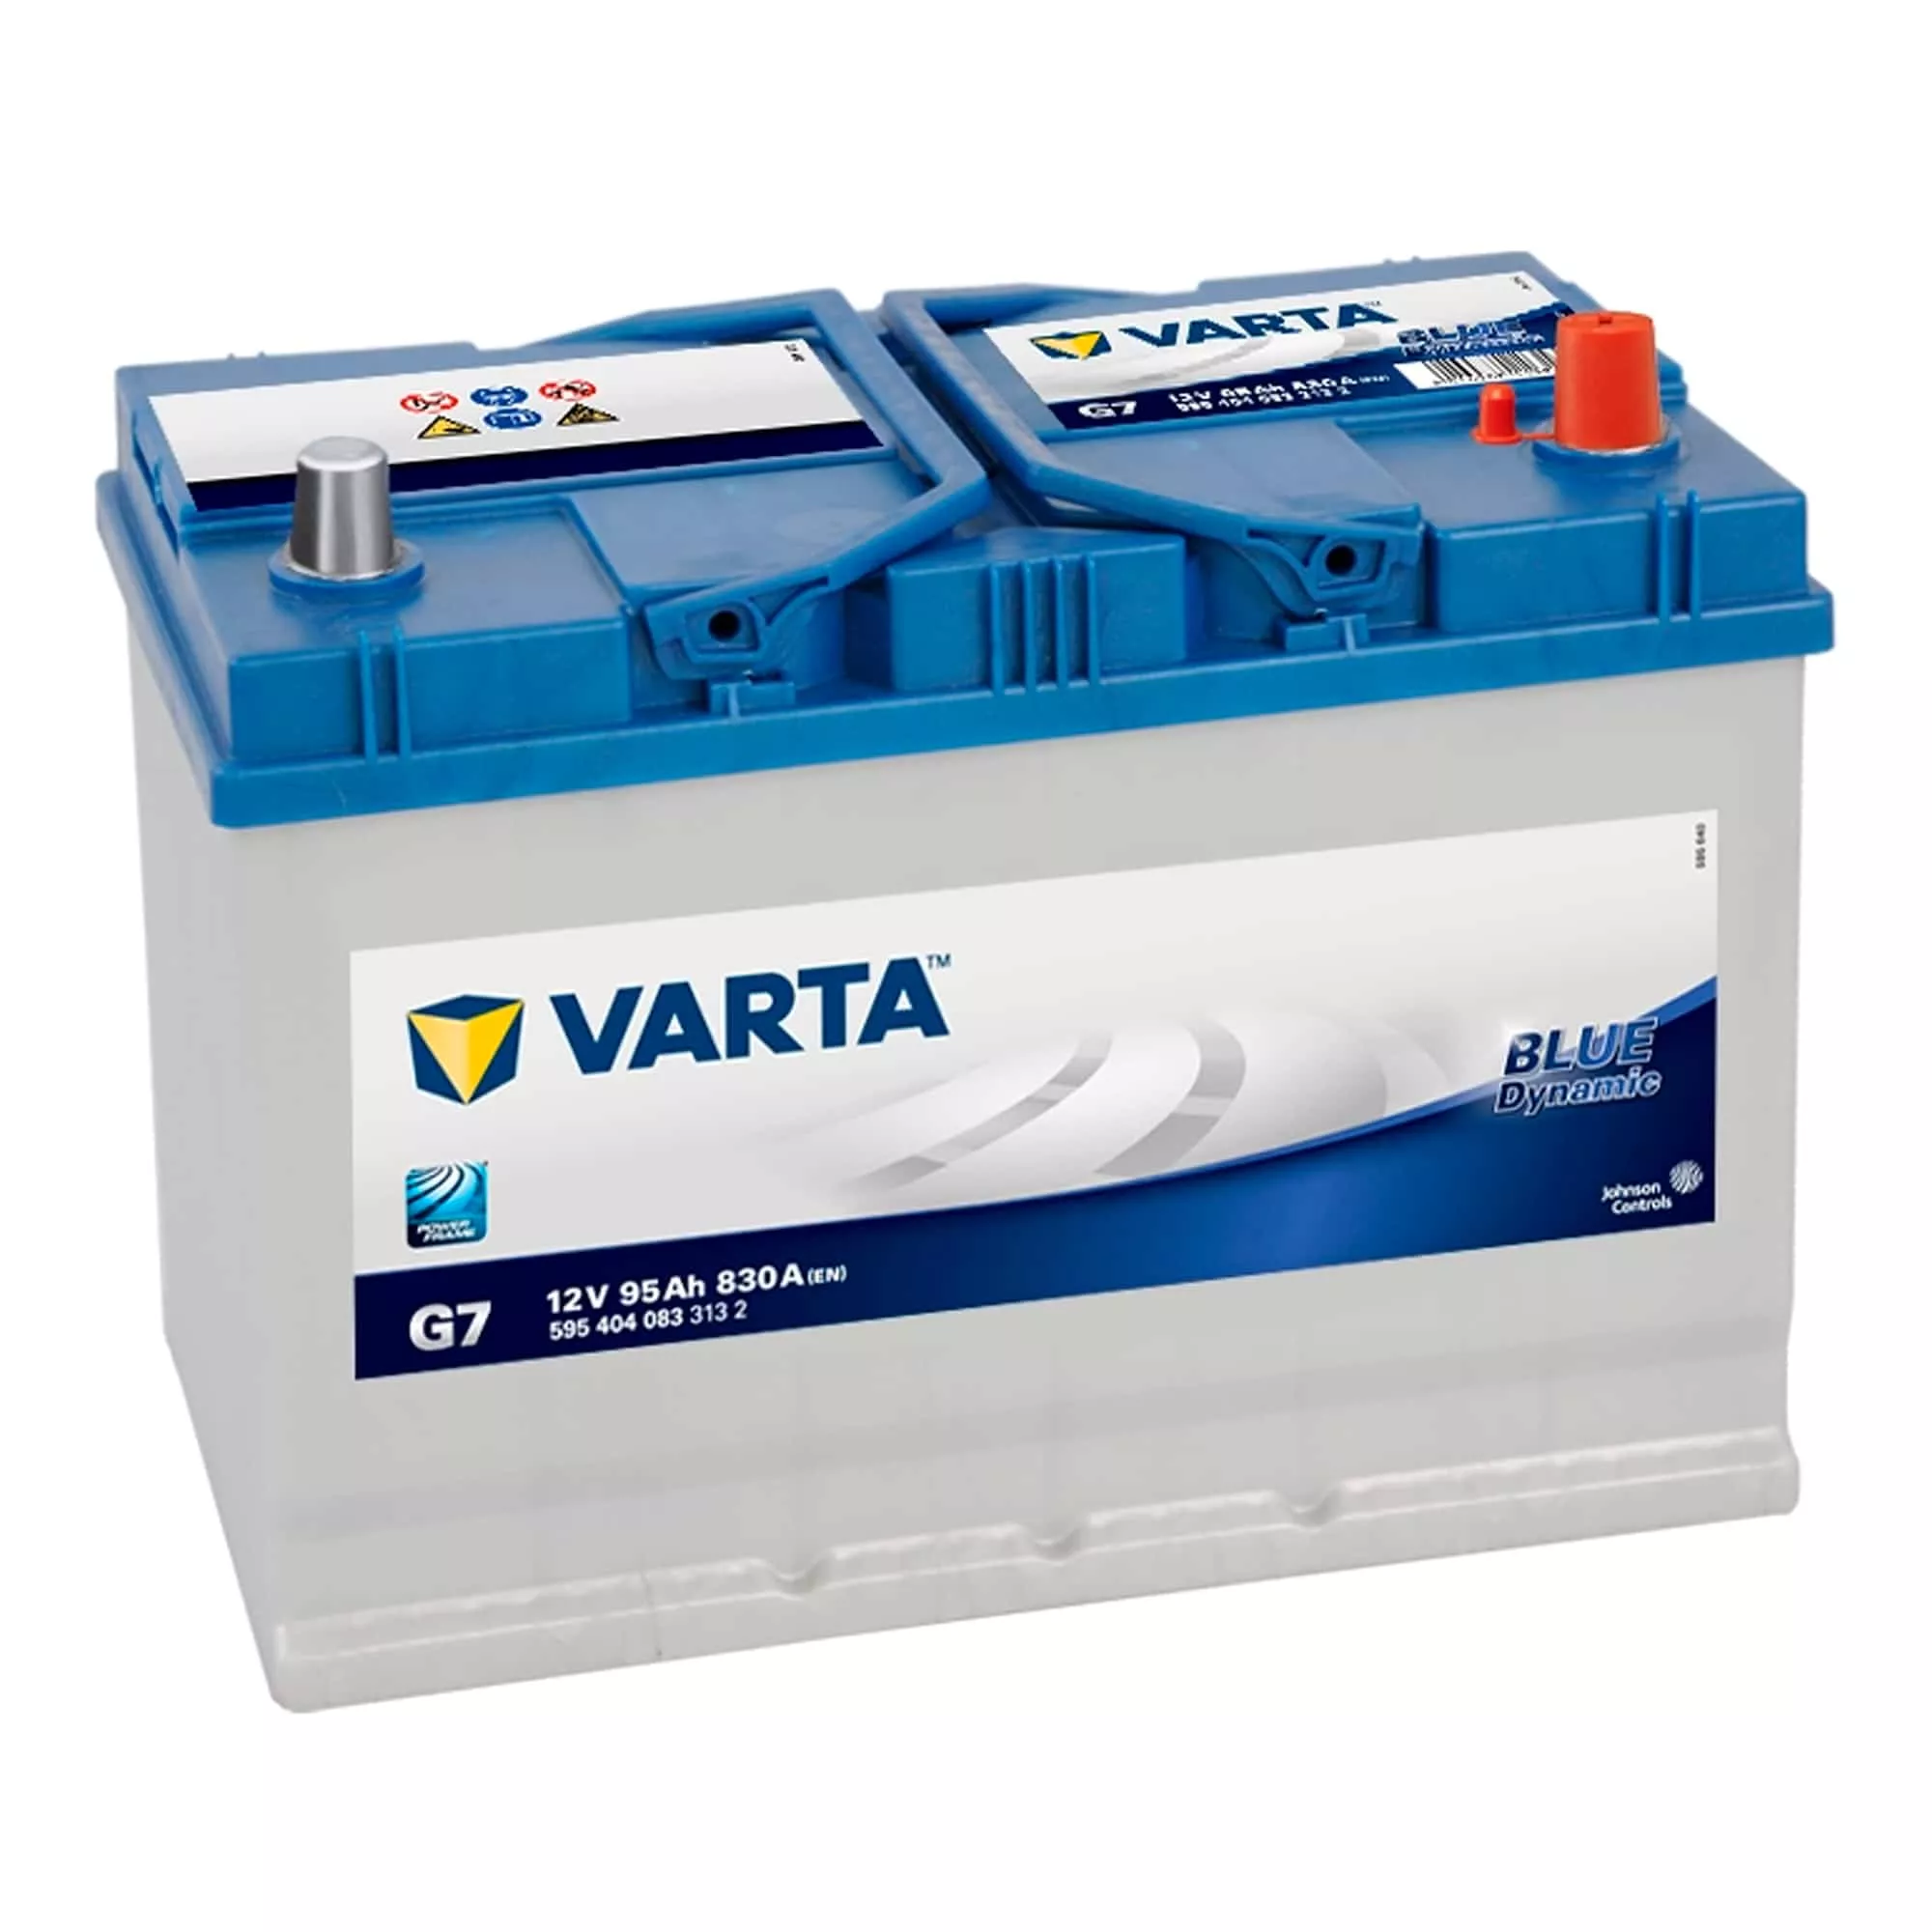 Автомобильный аккумулятор VARTA 6CT-95 АзЕ Asia 595 404 083 Blue Dynamic (G7)